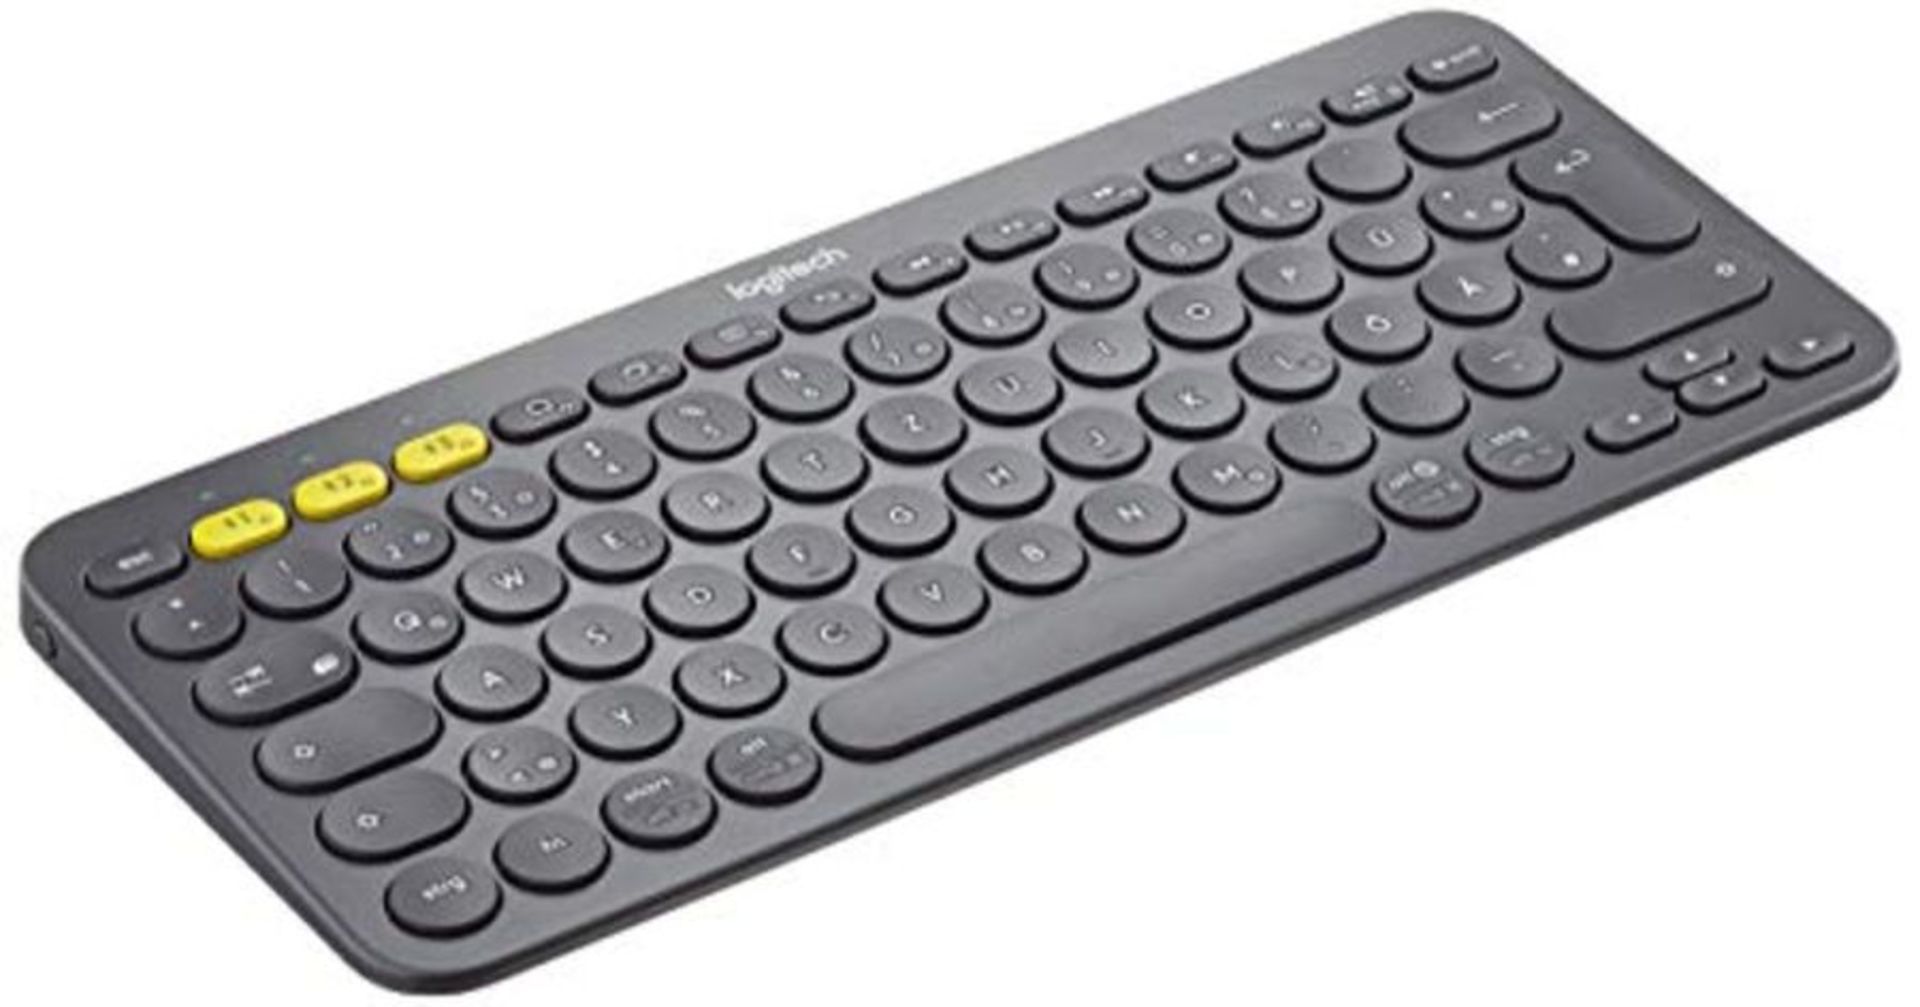 Logitech K380 Wireless Multi-Device Keyboard, QWERTZ German Layout - Black